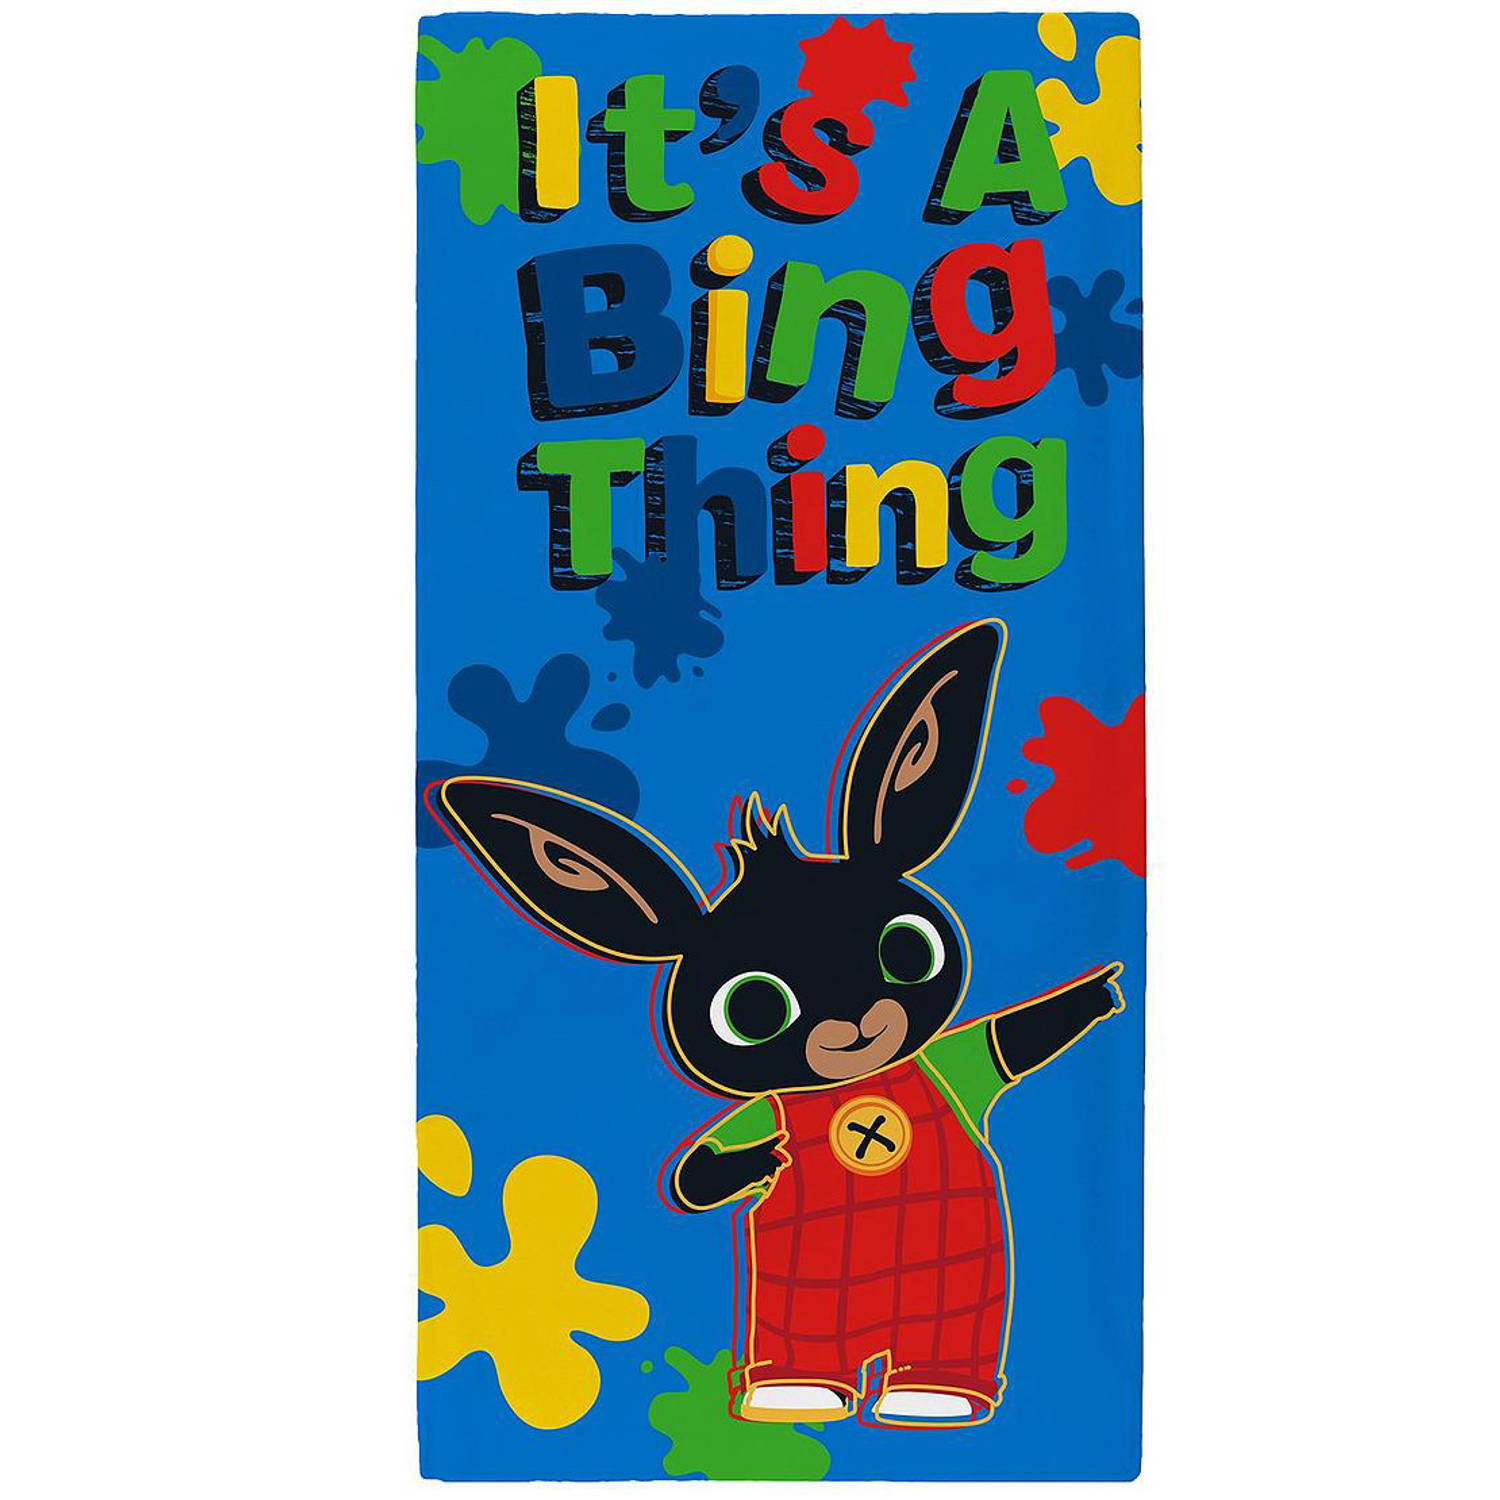 Bing Bunny Strandlaken Bing Thing - 70 x 140 cm - Blauw